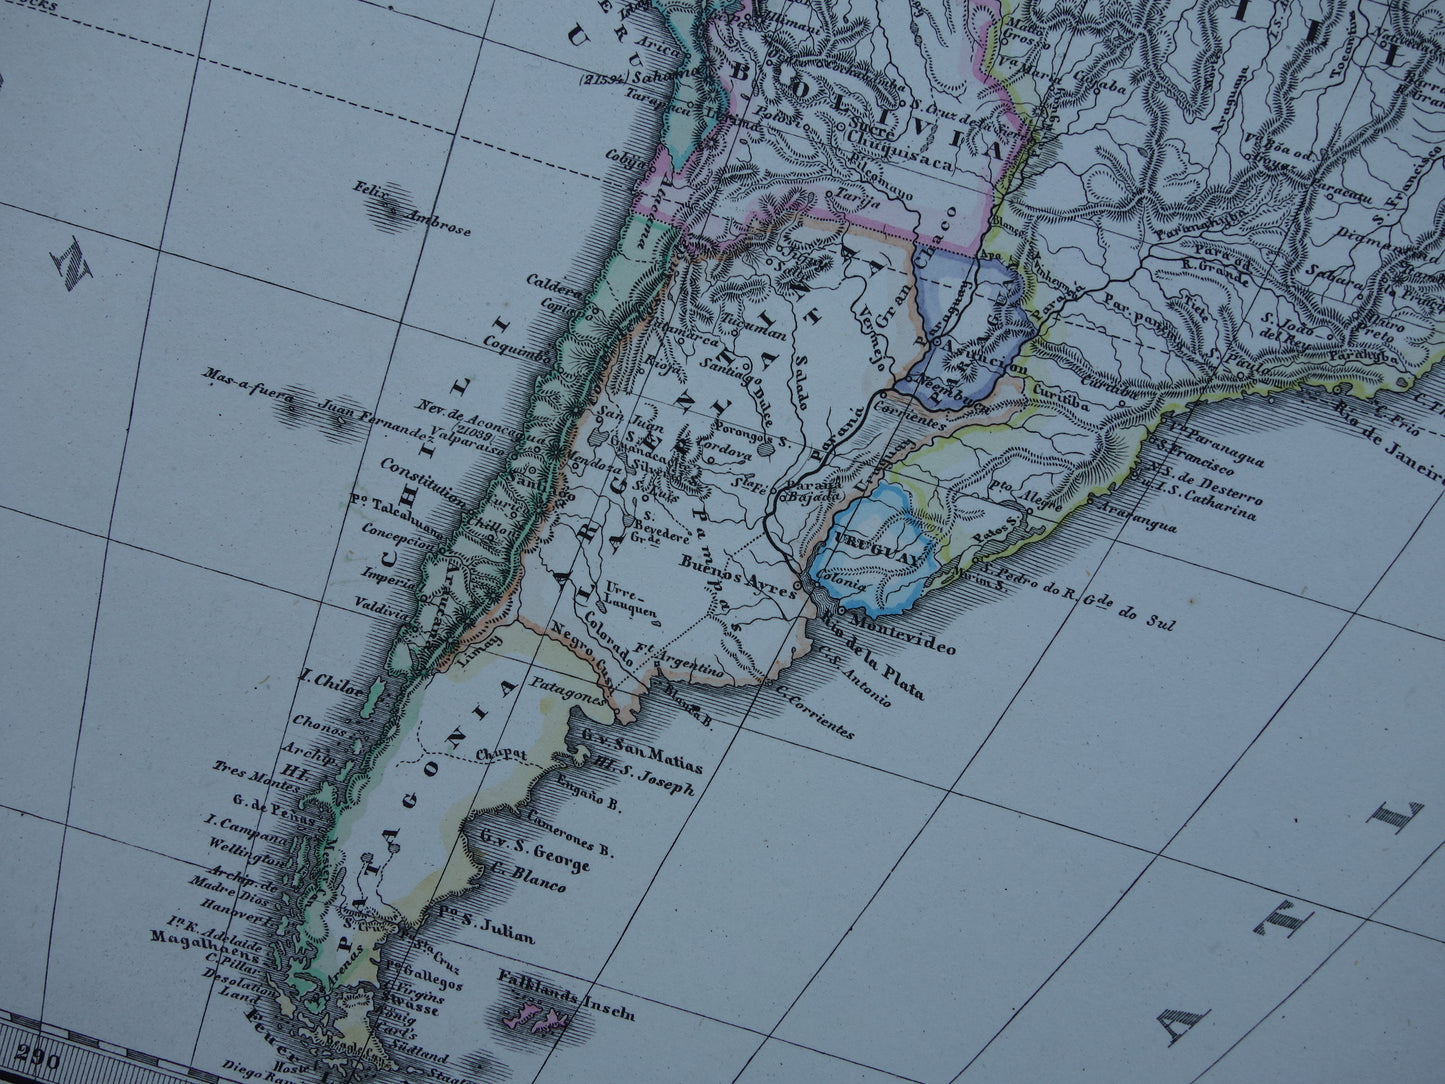 NOORD EN ZUID-AMERIKA oude kaart van VS Canada Patagonië Brazilië 1877 originele antieke Duitse handgekleurde landkaart poster met jaartal